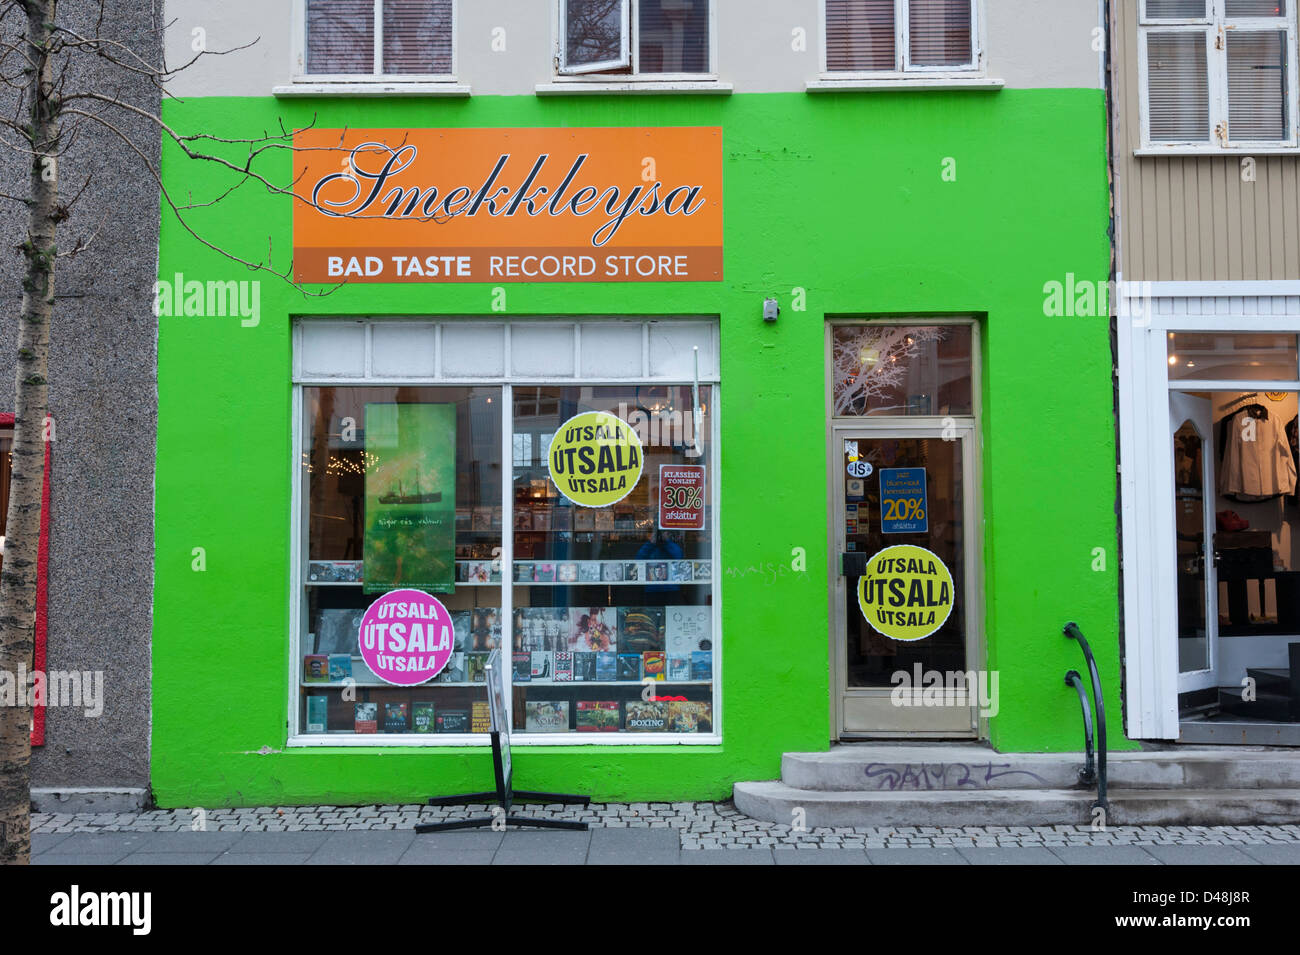 Smekkleysa cattivo gusto record store Reykjavik Islanda Foto Stock